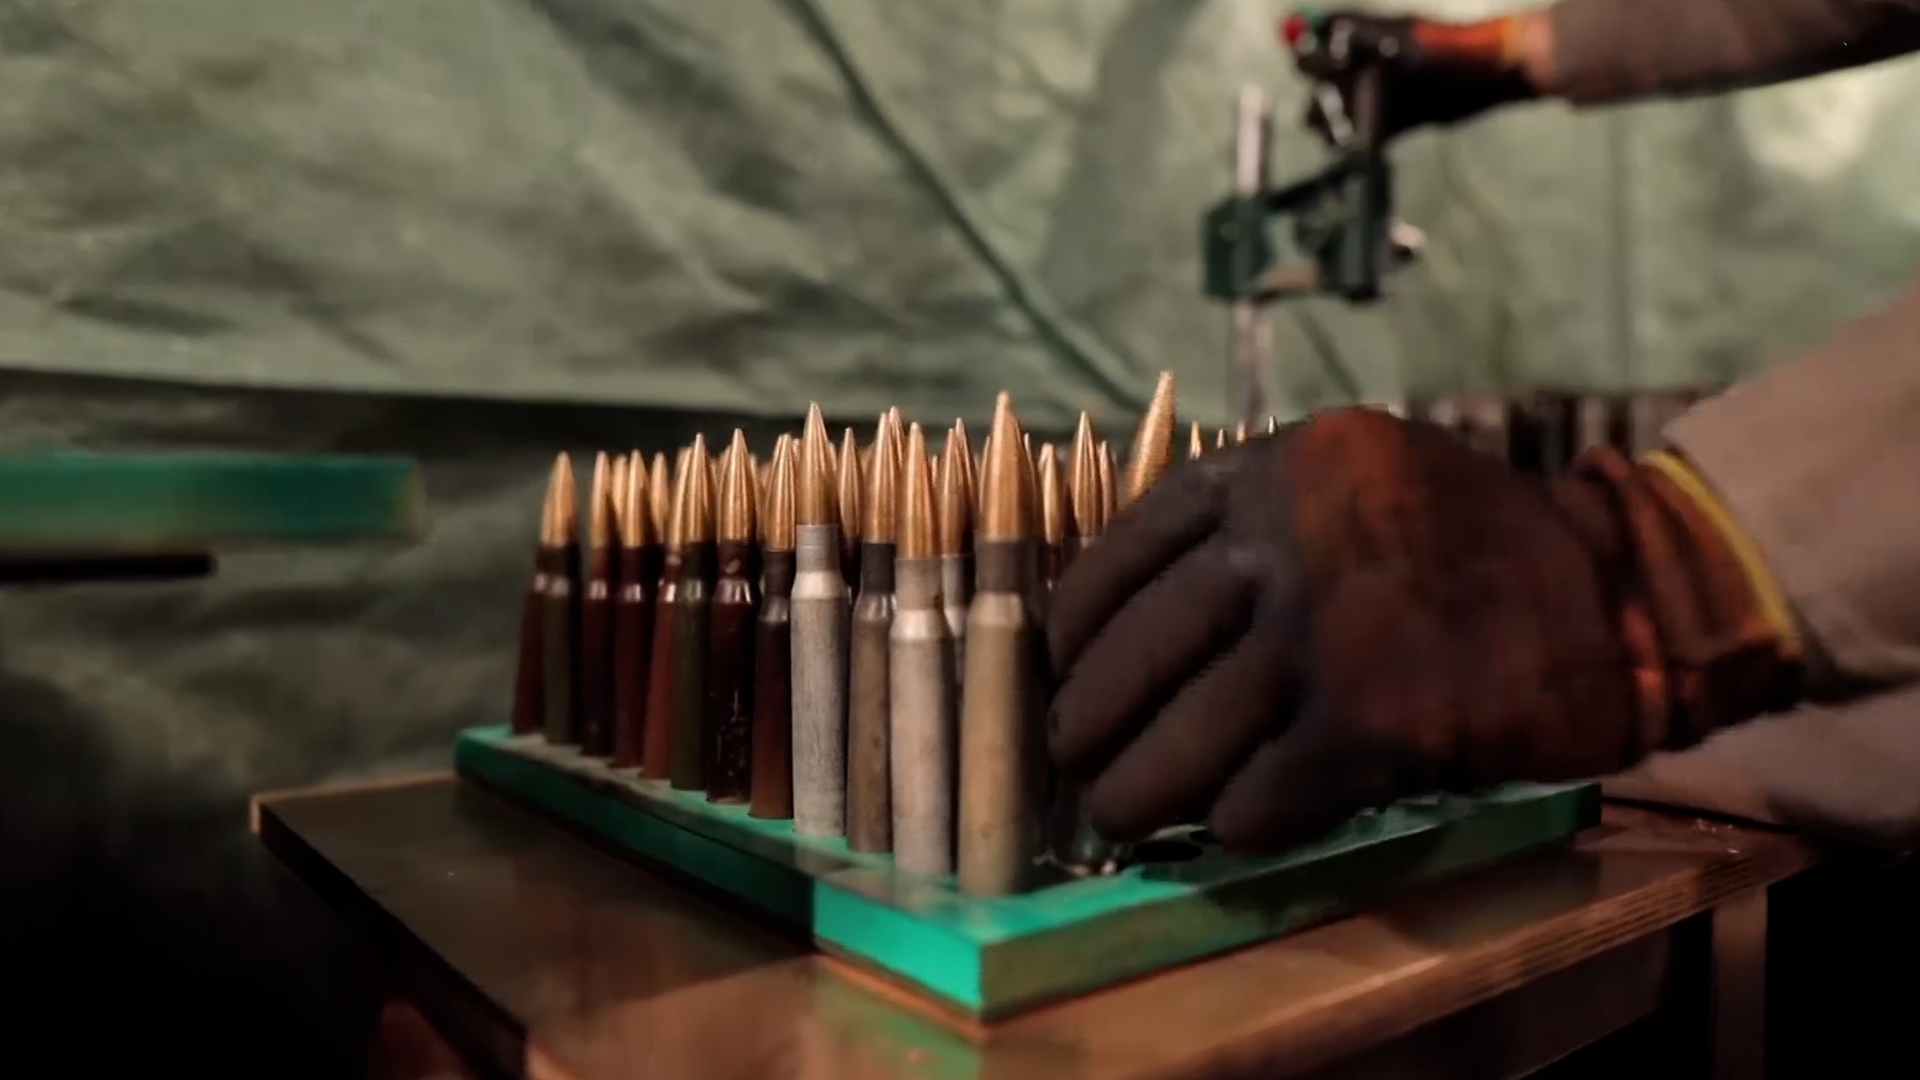 مشاهد من تصنيع القسام بندقية “الغول” والتدريب عليها | البرامج – البوكس نيوز